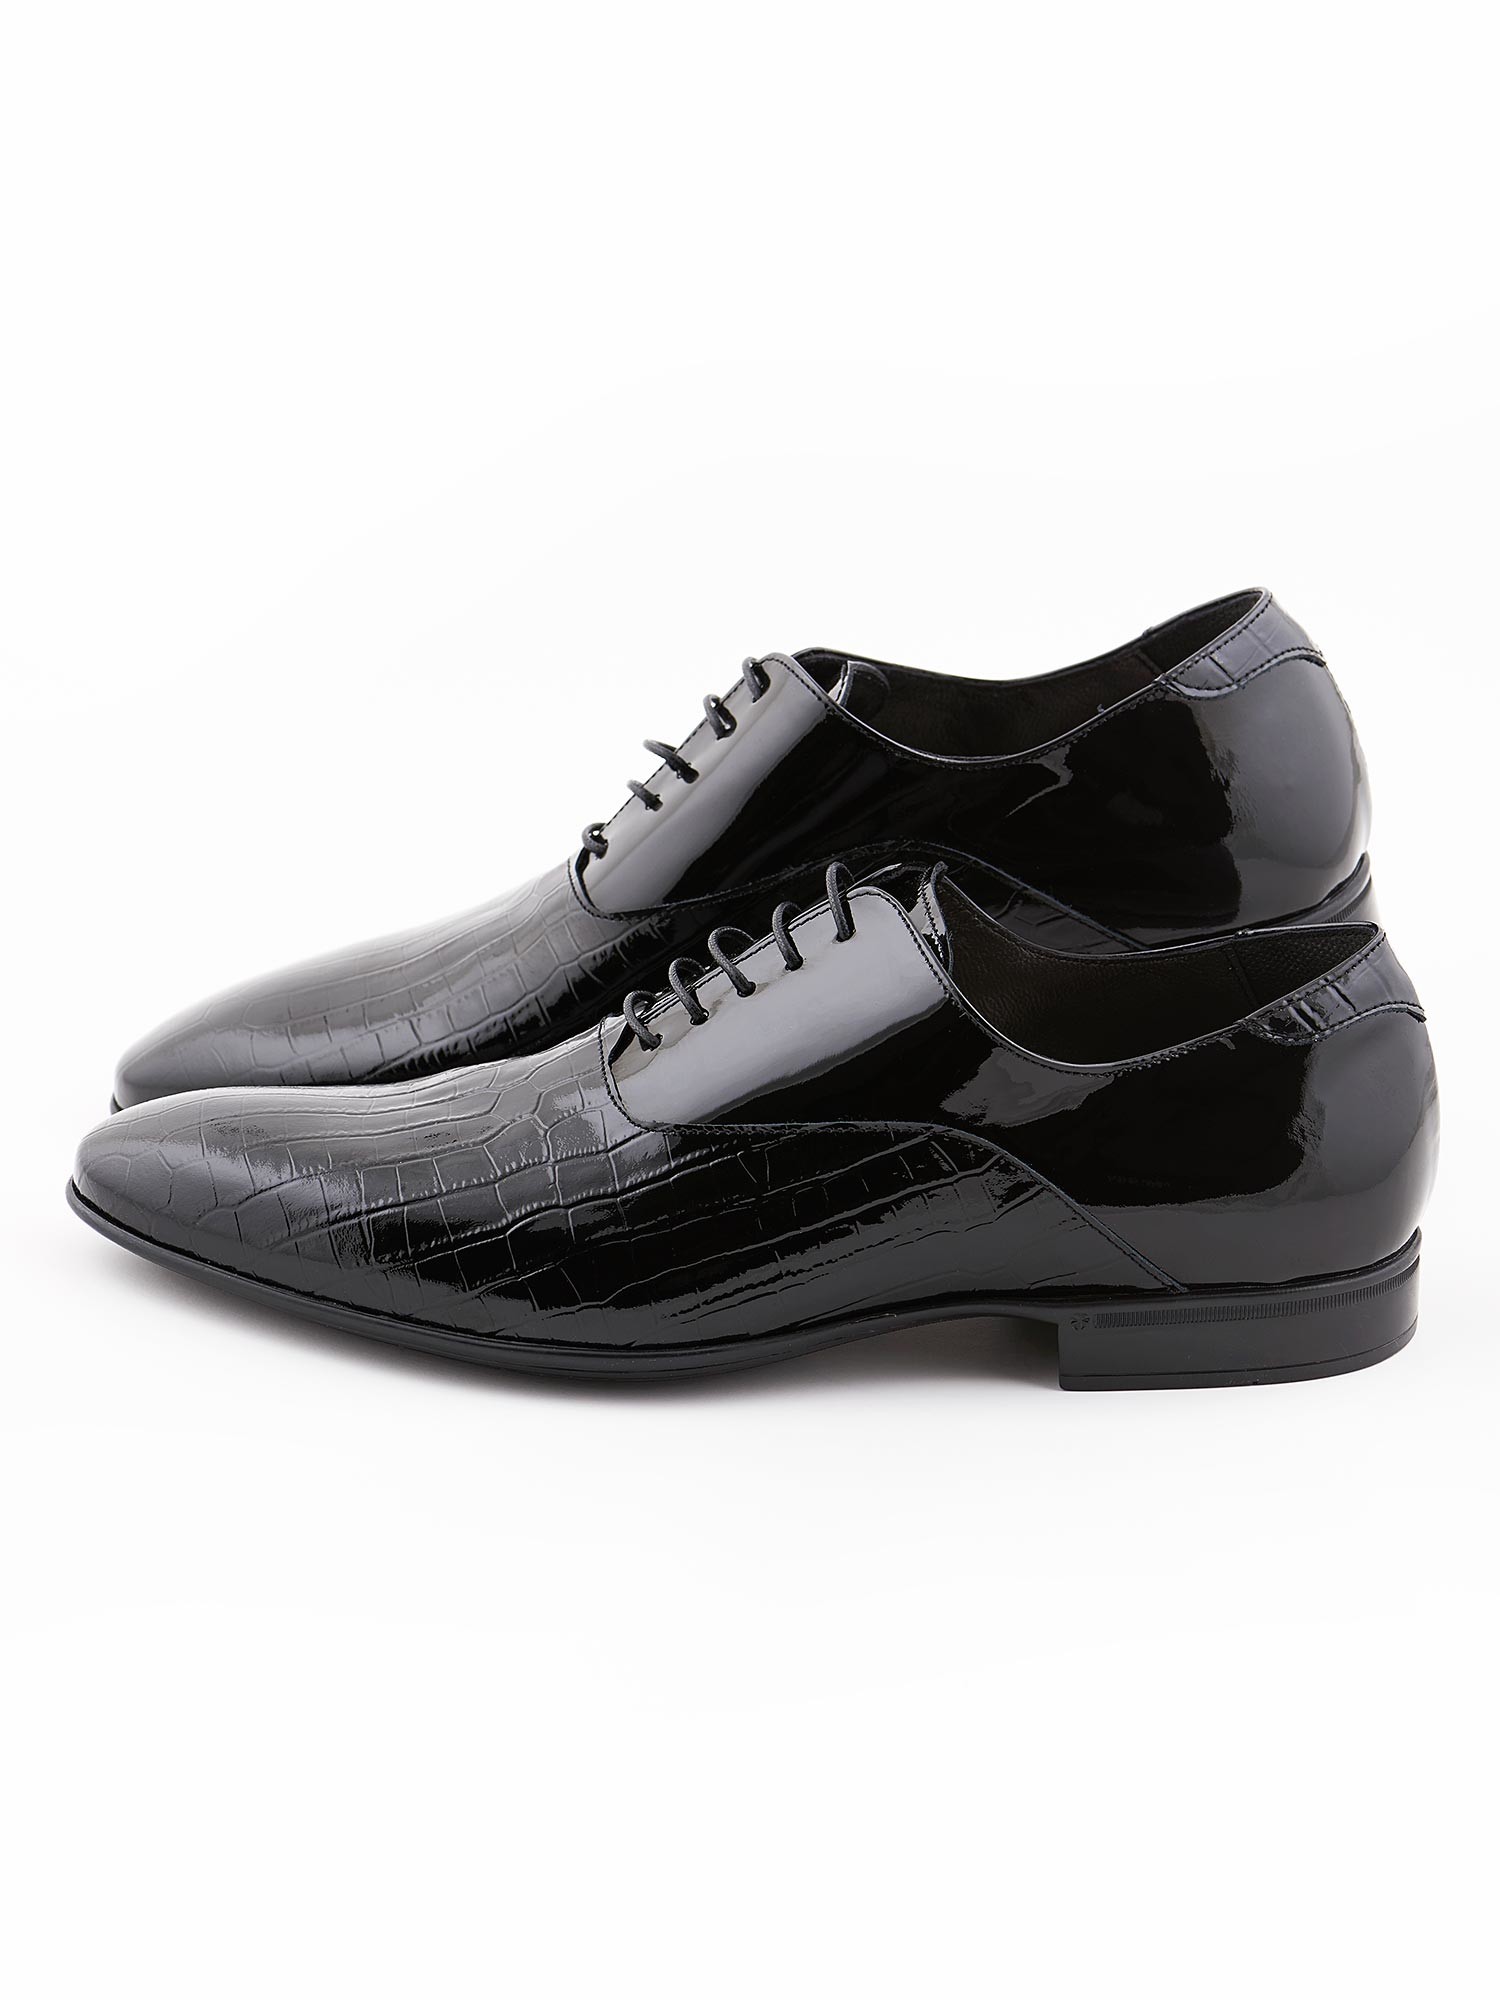 Romeo Gigli - Black elegant men's shoe